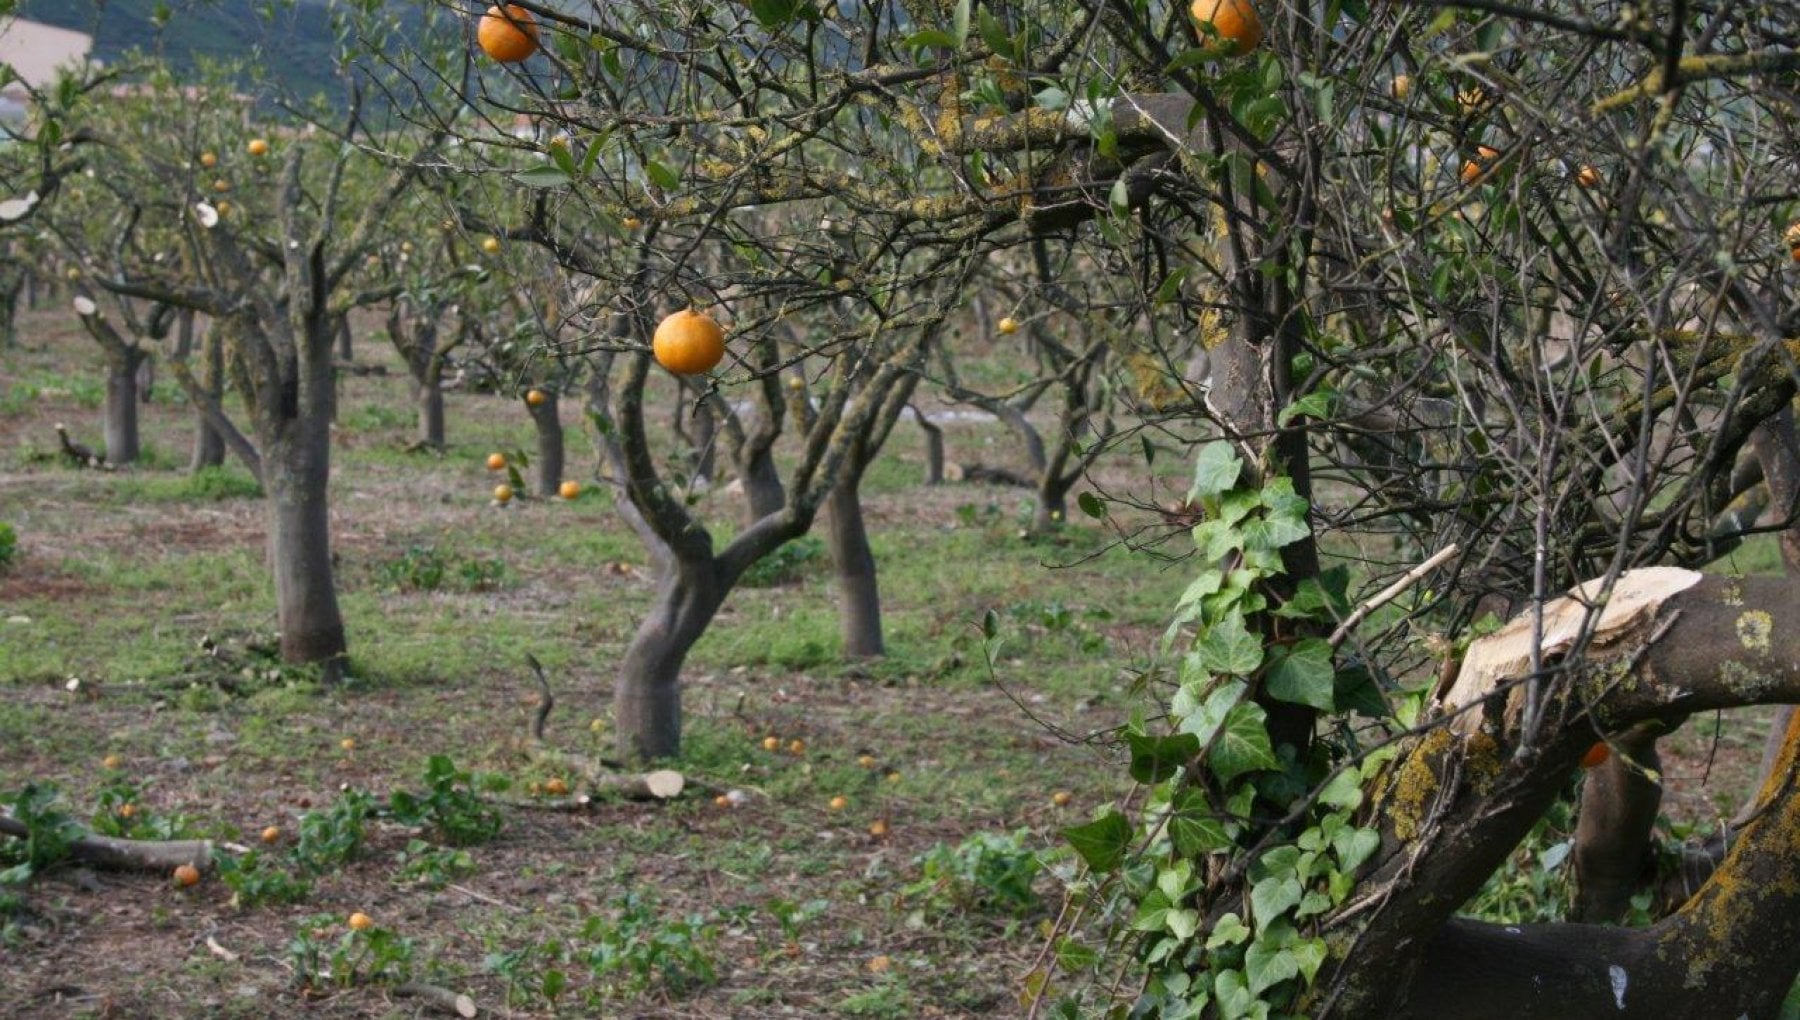 Stare de calamitate în Sicilia din cauza secetei extreme. Producția de portocale este compromisă - 081517142c771ddb5bdc4437b80d7a27-1708280531.jpg